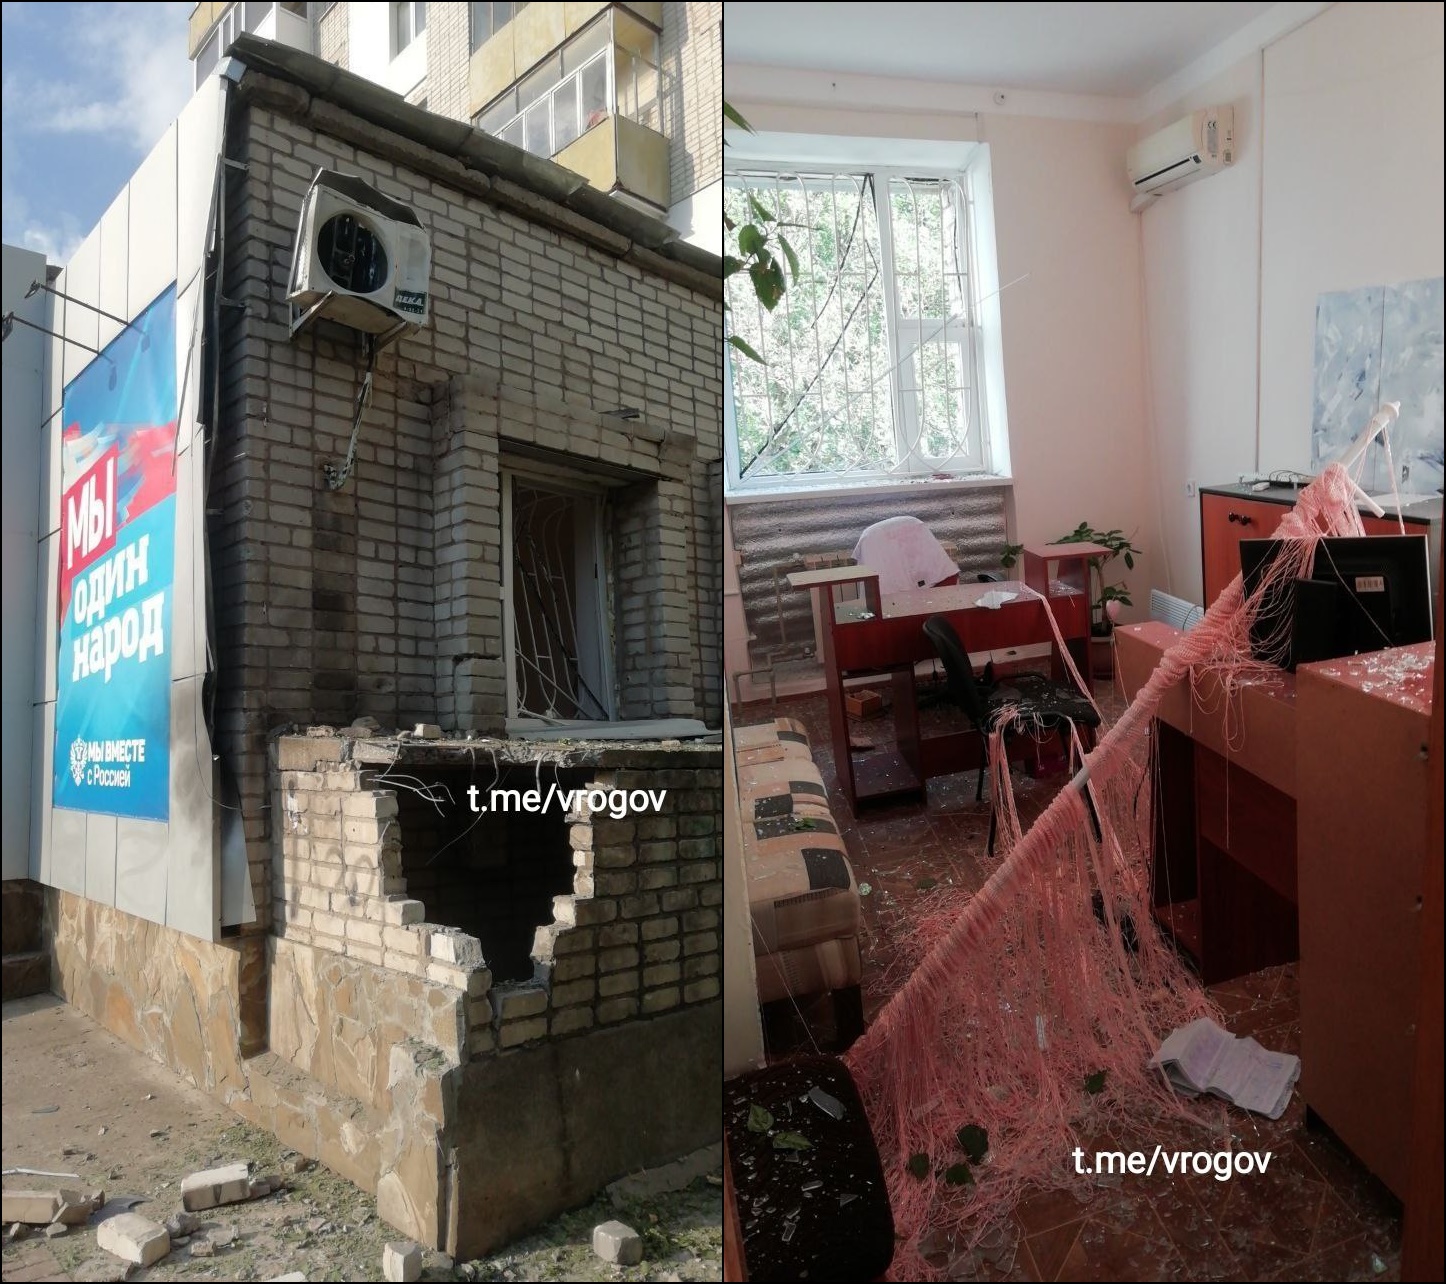 Сегодняшние новости про теракт. Взрыв здания. Теракт в Бердянске. Школа в Украине взорвали. Российский флаг на здании.